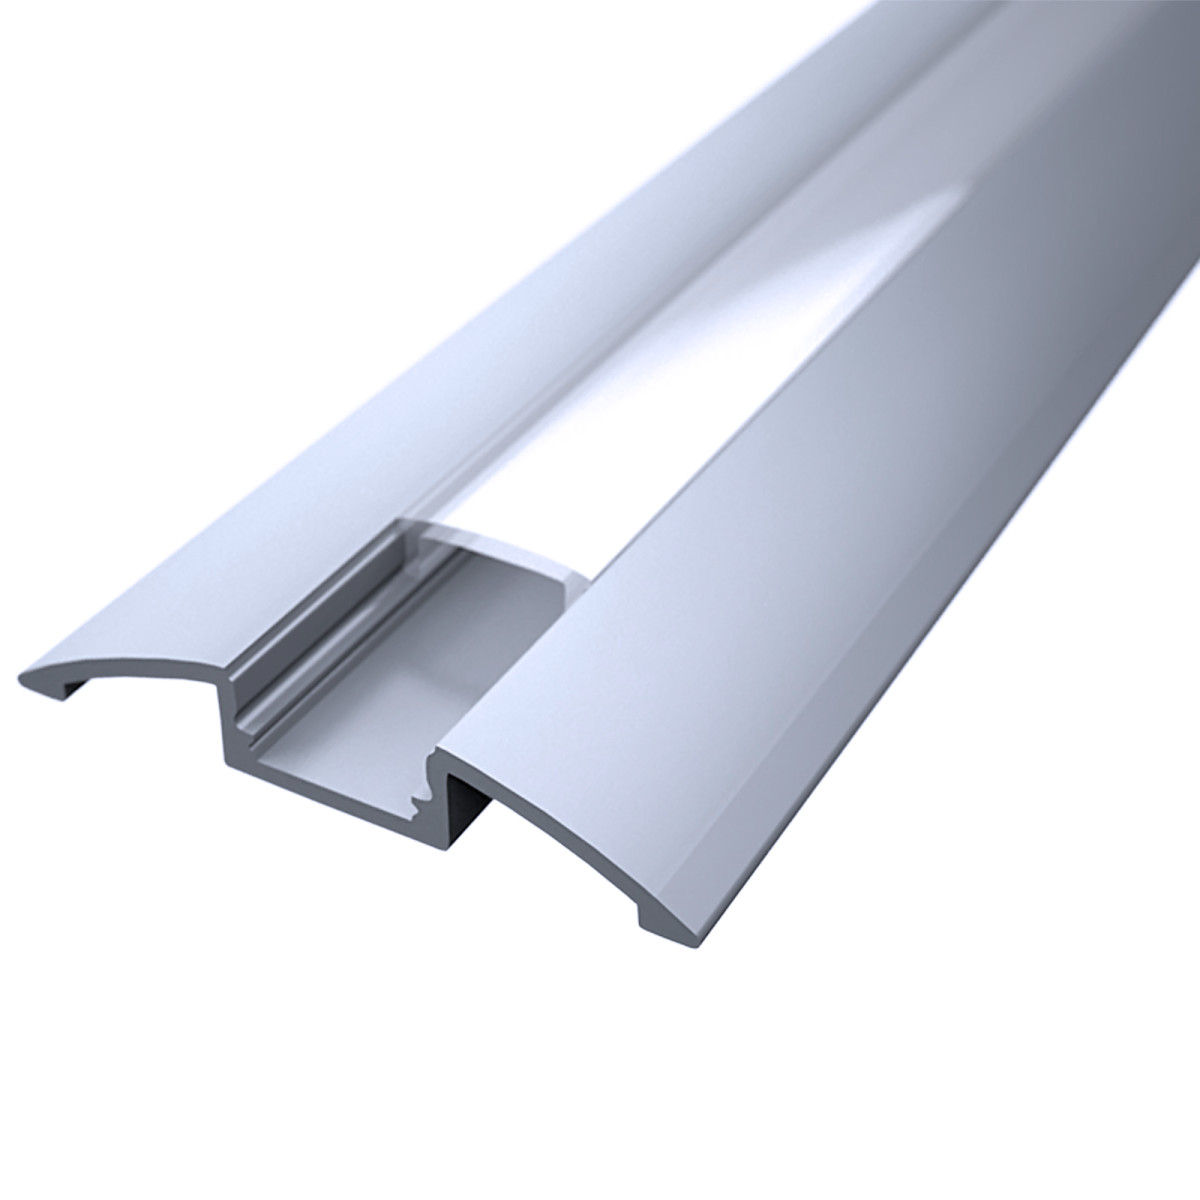 LED Flachprofil "Design-Line" | Abdeckung transparent | Zuschnitt auf 16cm |